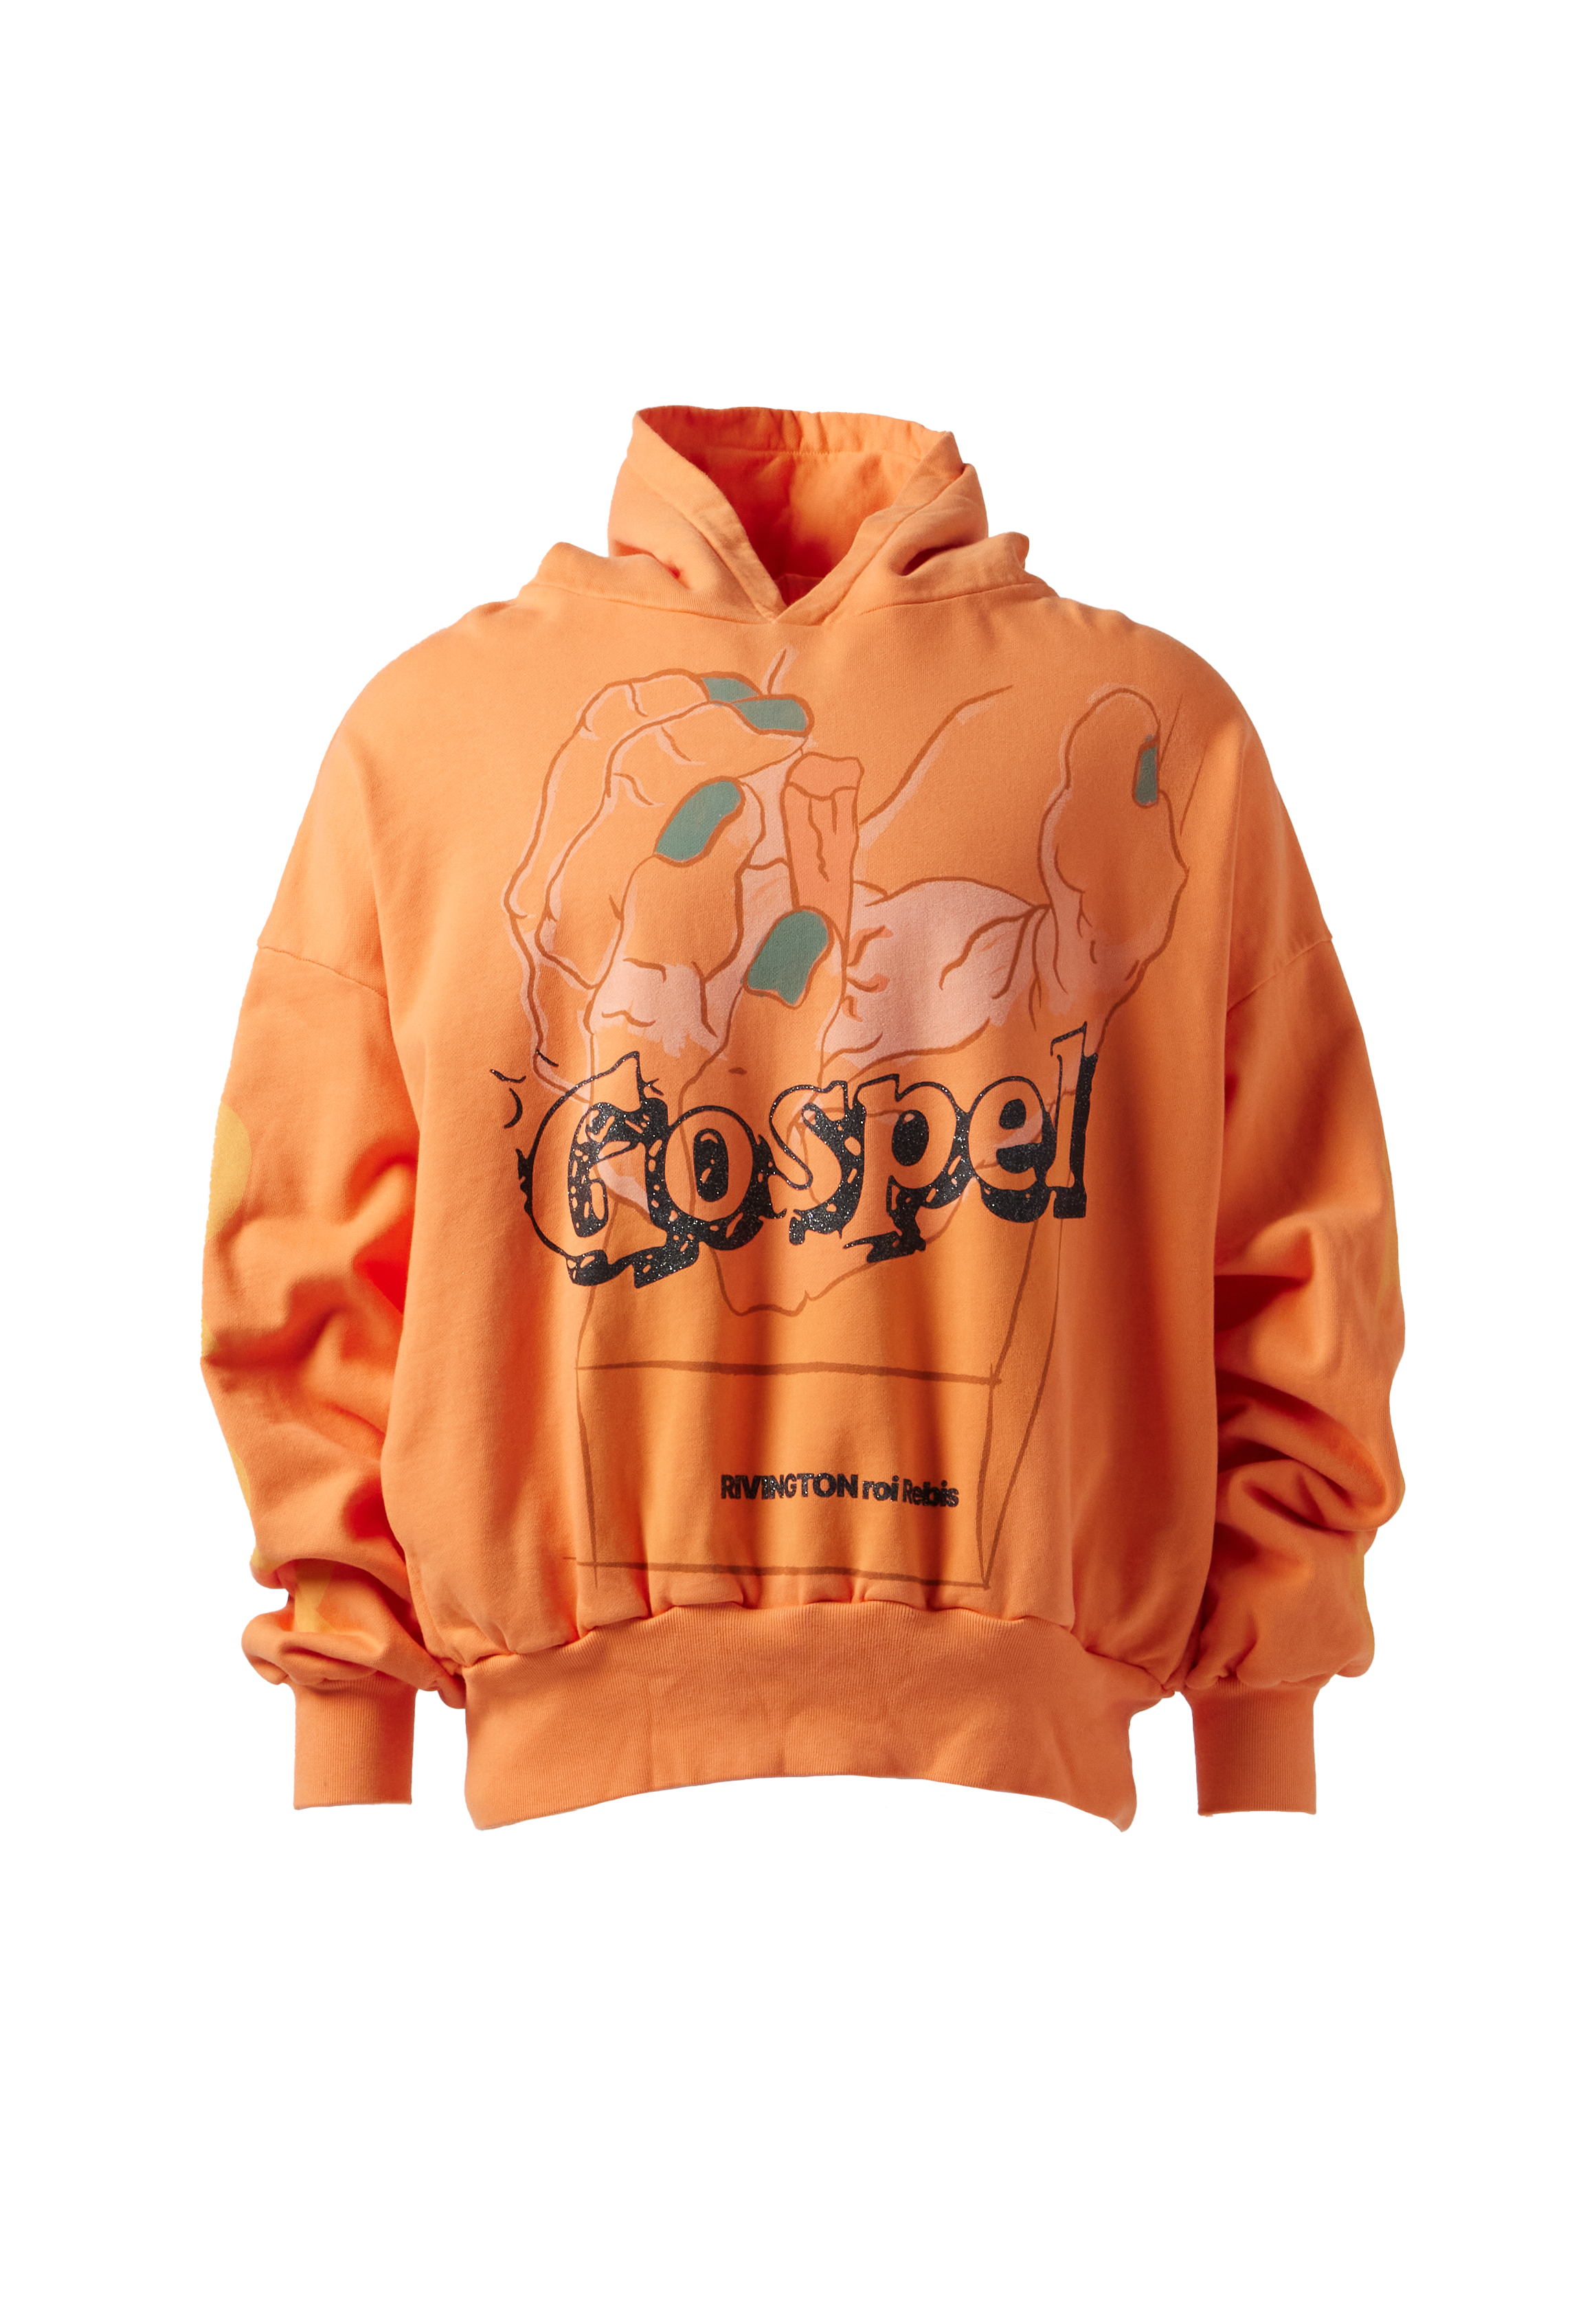 RRR123 - Gospel Hoodie product image